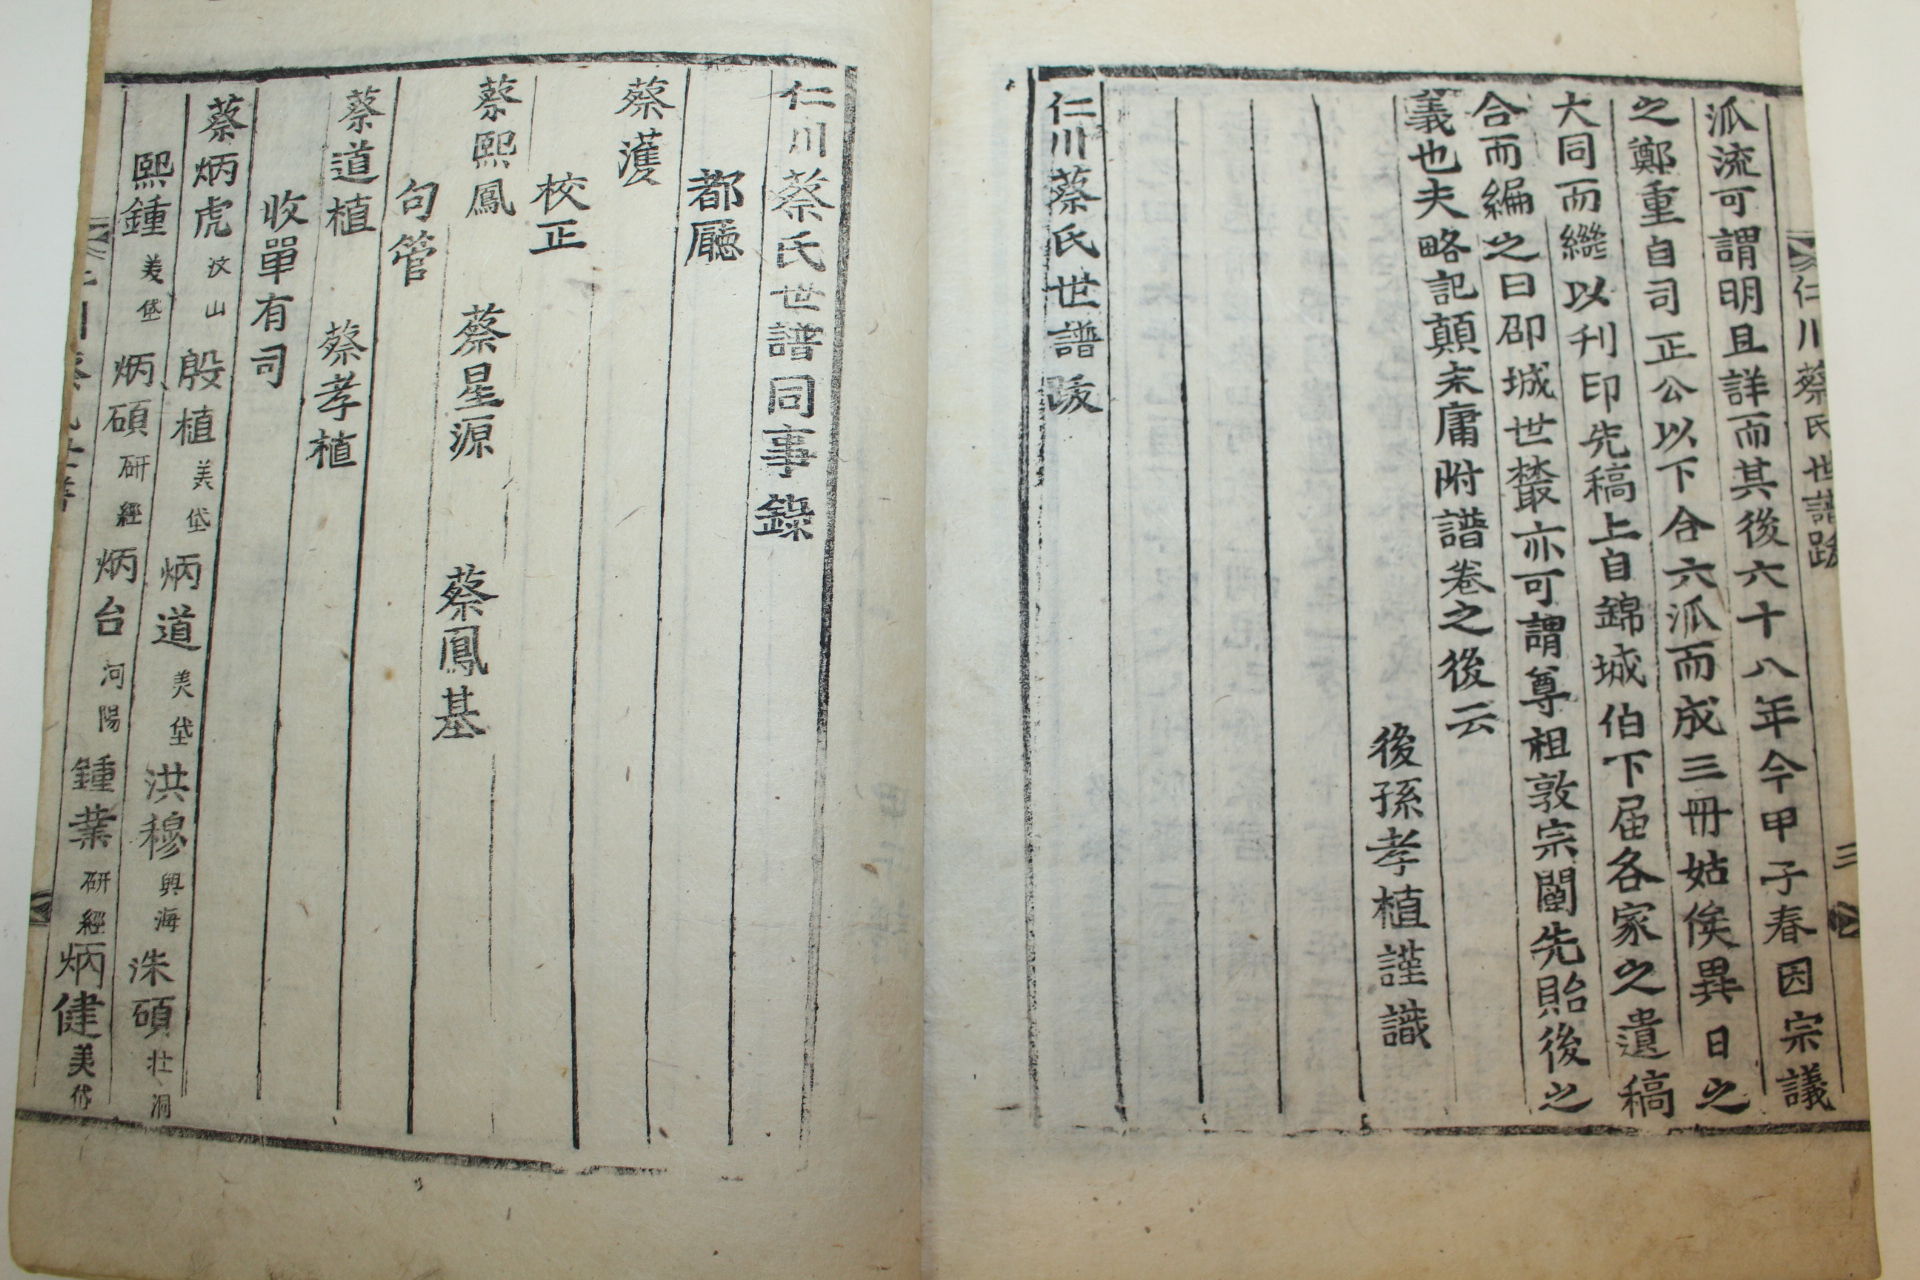 조선시대 목활자본 인천채씨세보(仁川蔡氏世譜) 3권3책완질